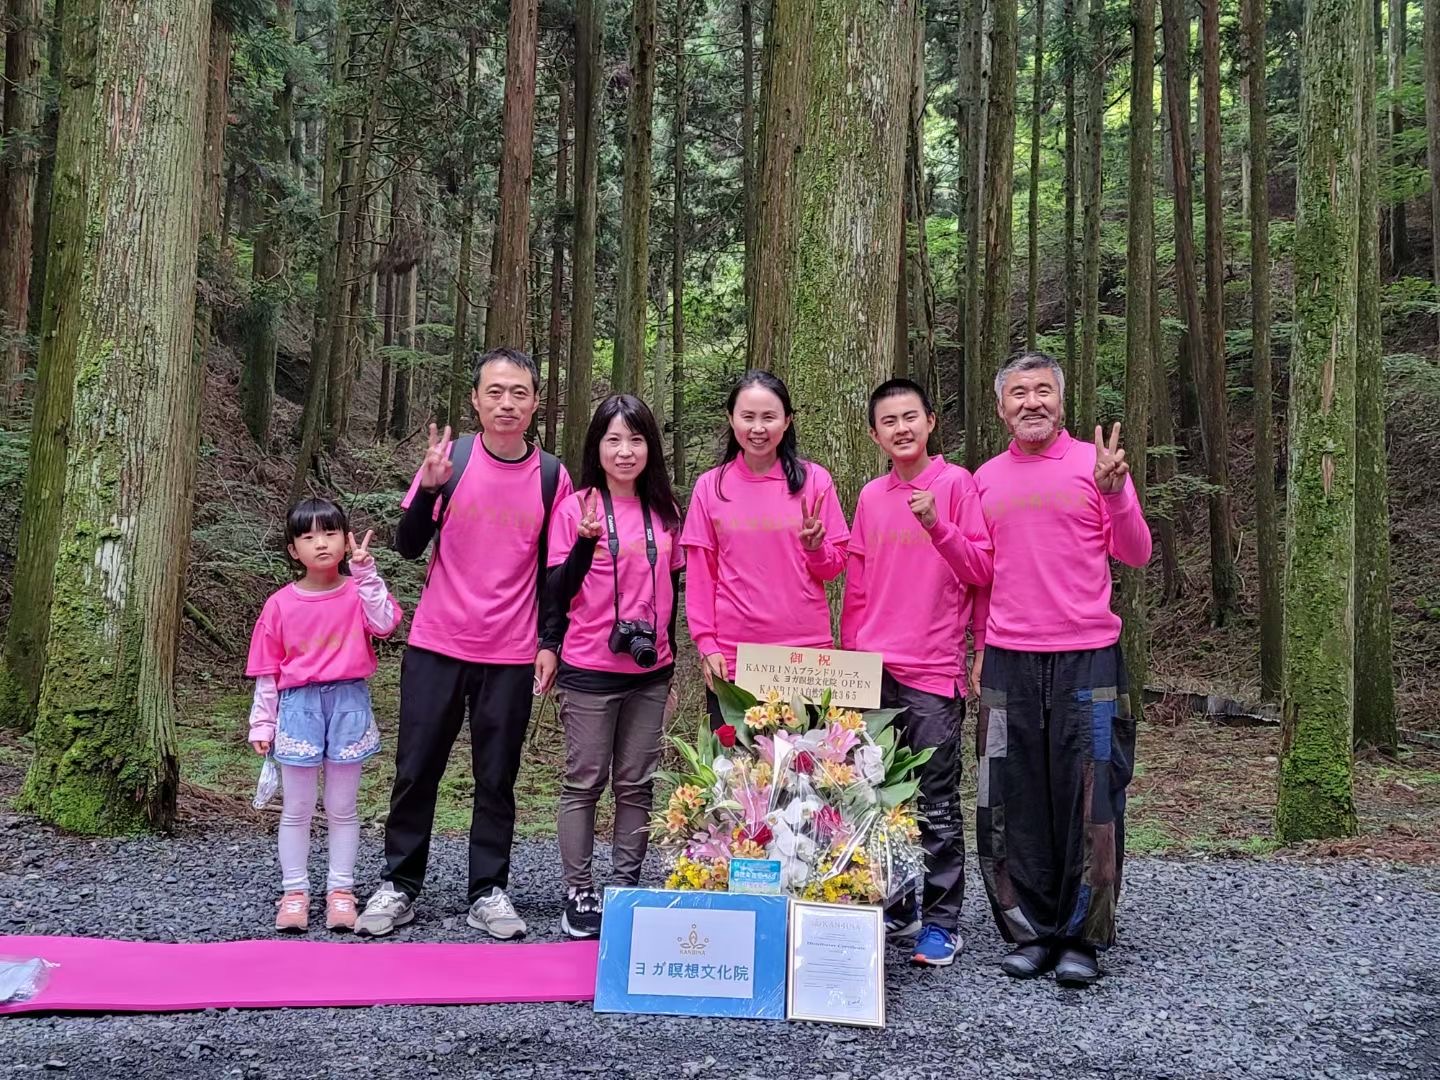 2022年6月18日 KANBINAブランドリリース&ヨガ瞑想文化院オープンイベント in 比叡山